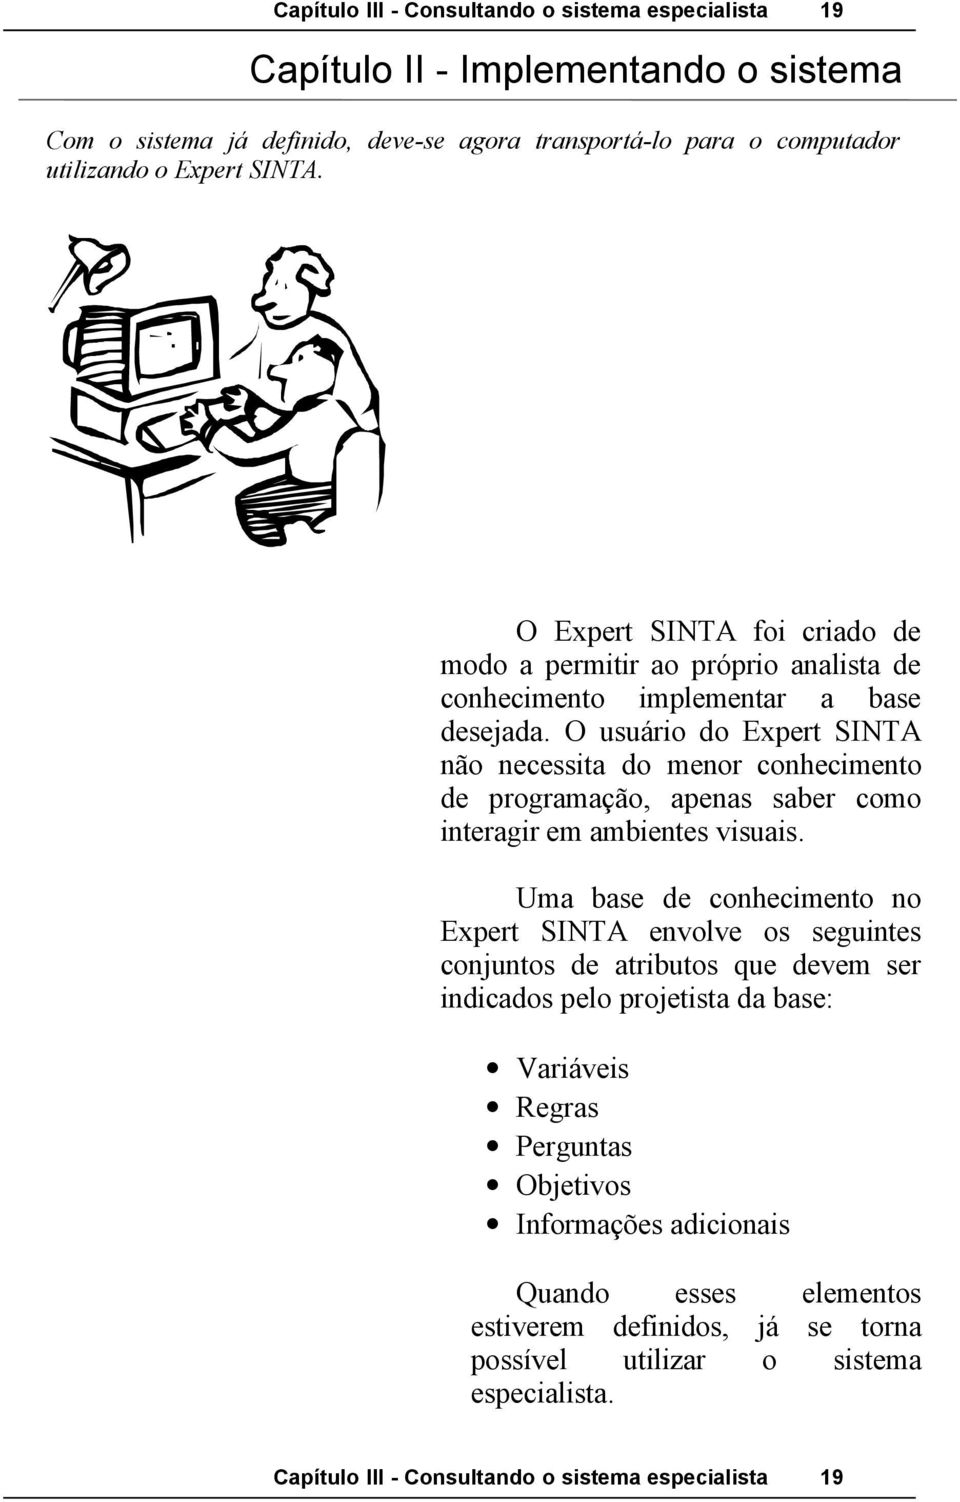 O usuário do Expert SINTA não necessita do menor conhecimento de programação, apenas saber como interagir em ambientes visuais.